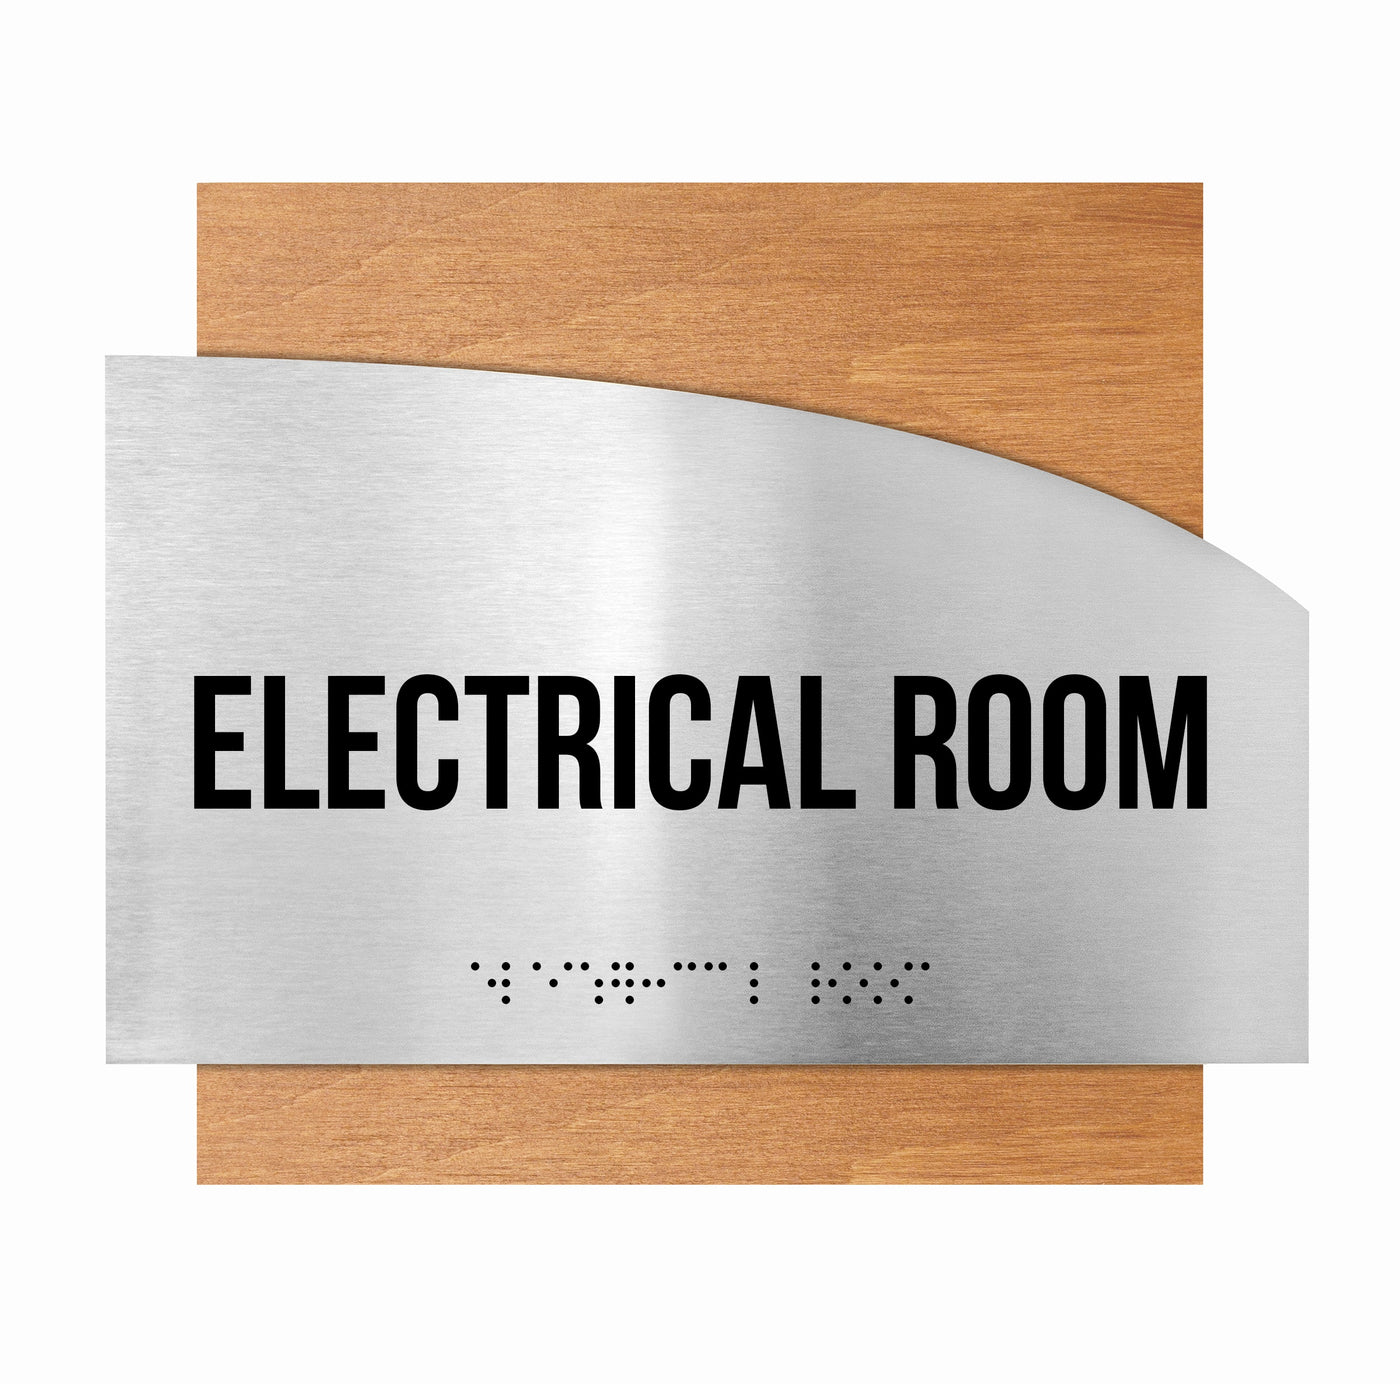 Electrical Room Steel Sign "Wave" Design